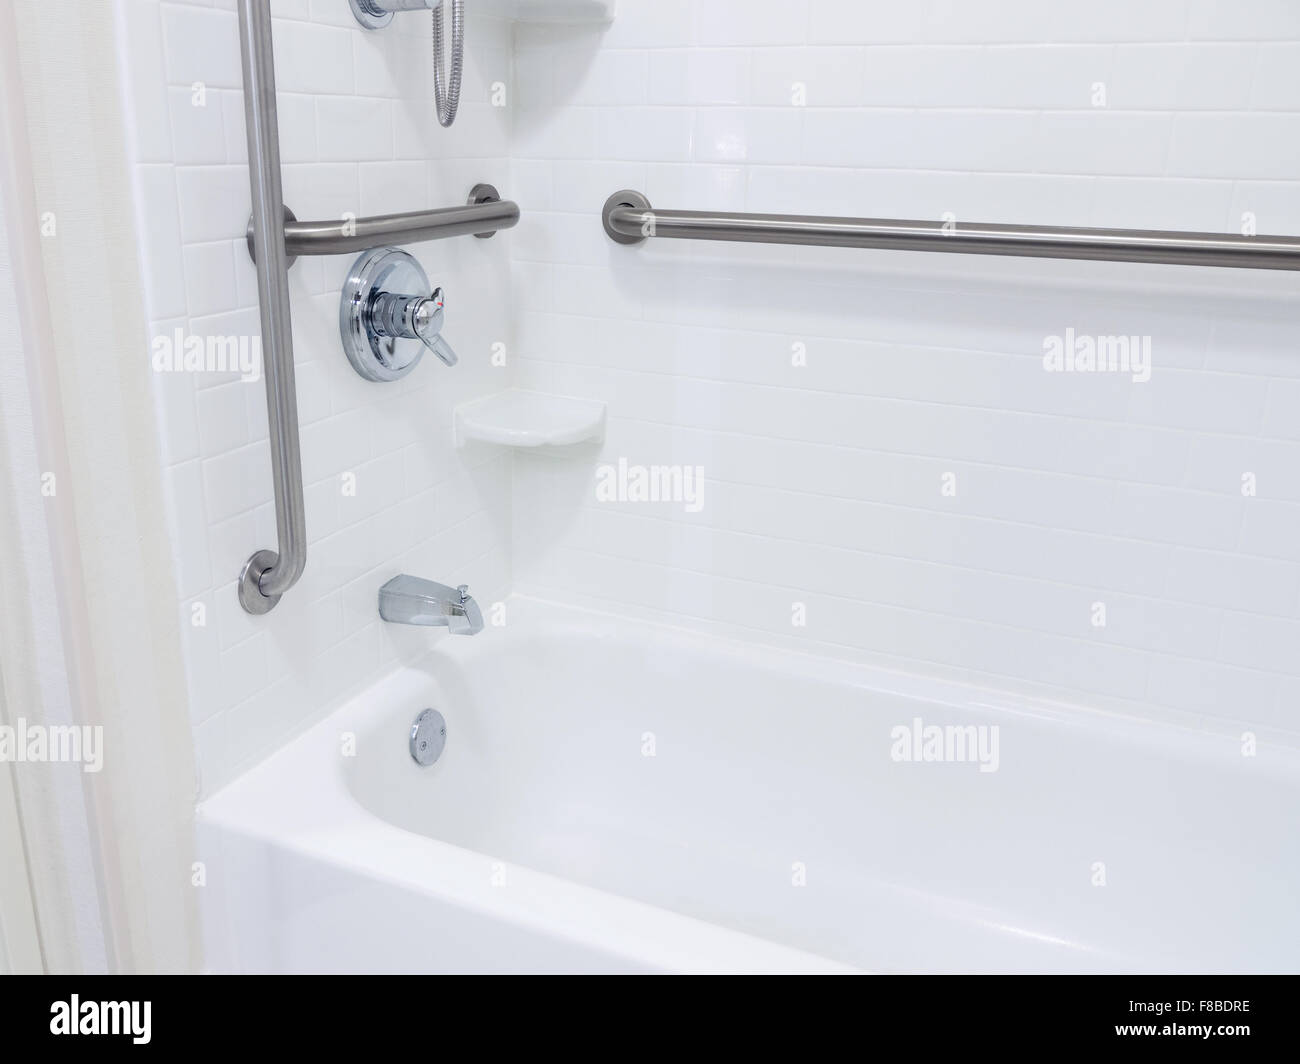 Behinderte behindertengerechter Zugang Bad Badewanne mit Haltegriffe  Stockfotografie - Alamy